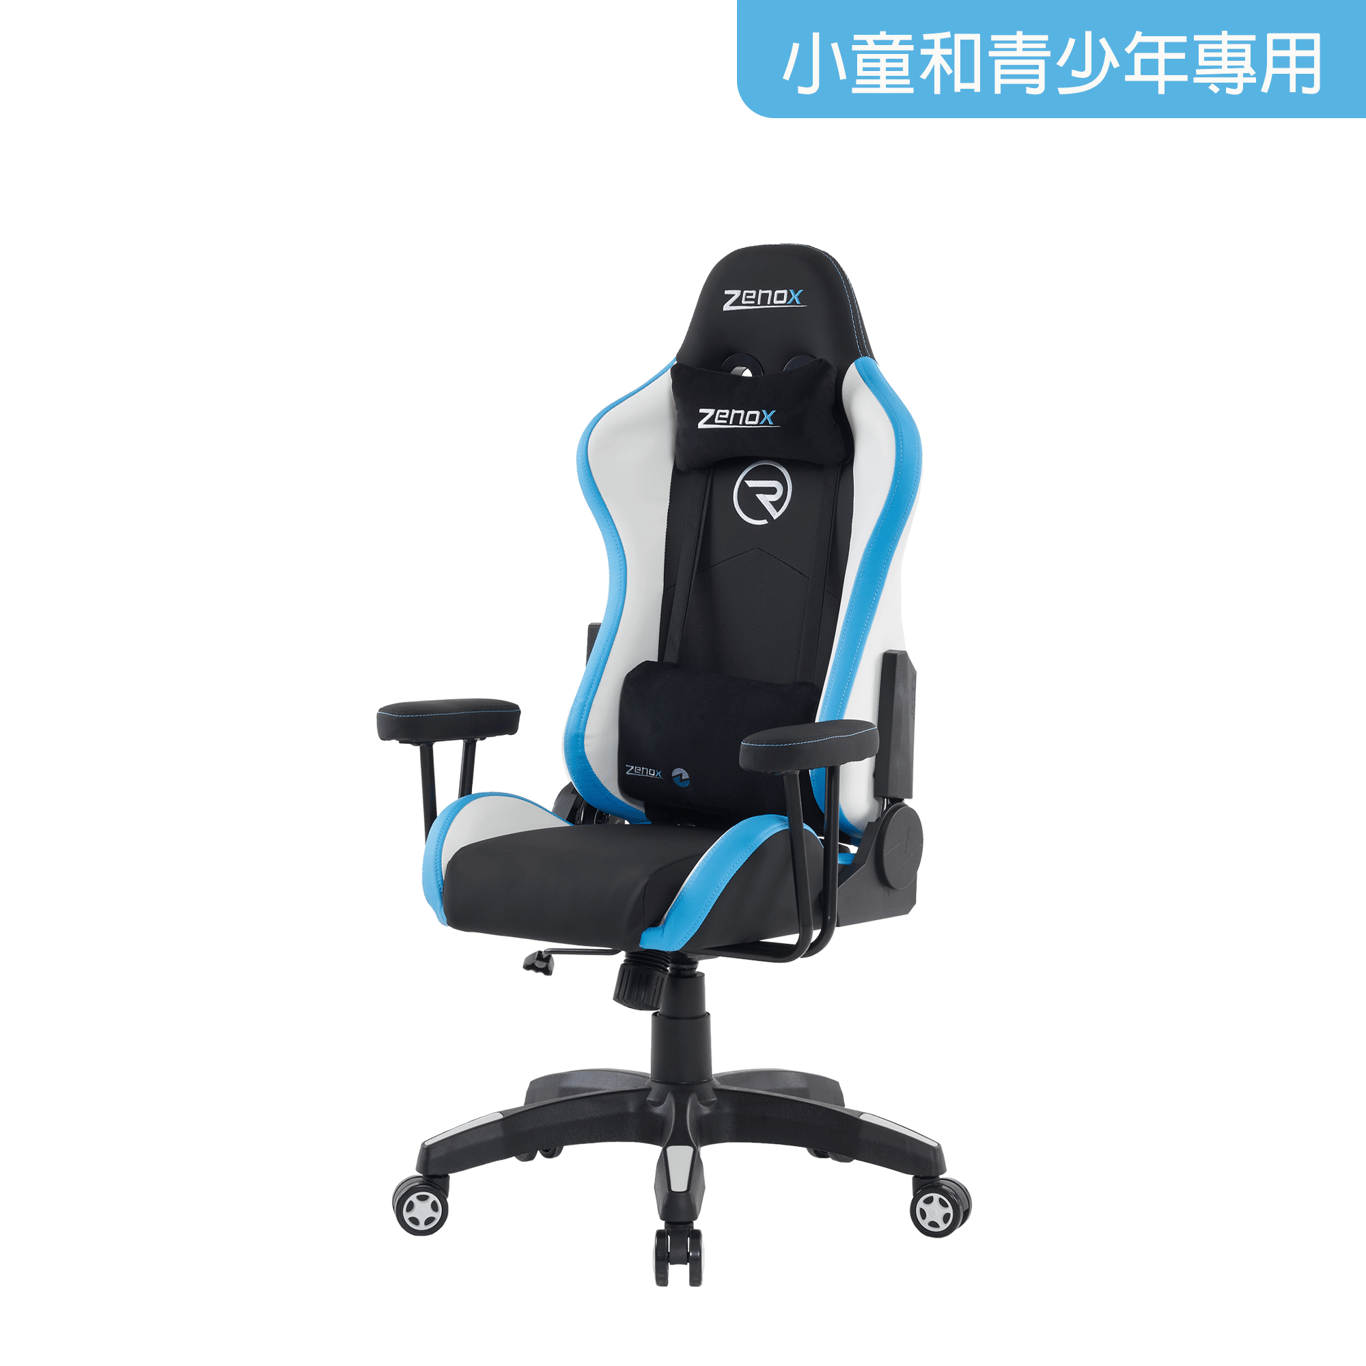 Zenox Rookie-MK2 Gaming Chair  - Sky Blue -4